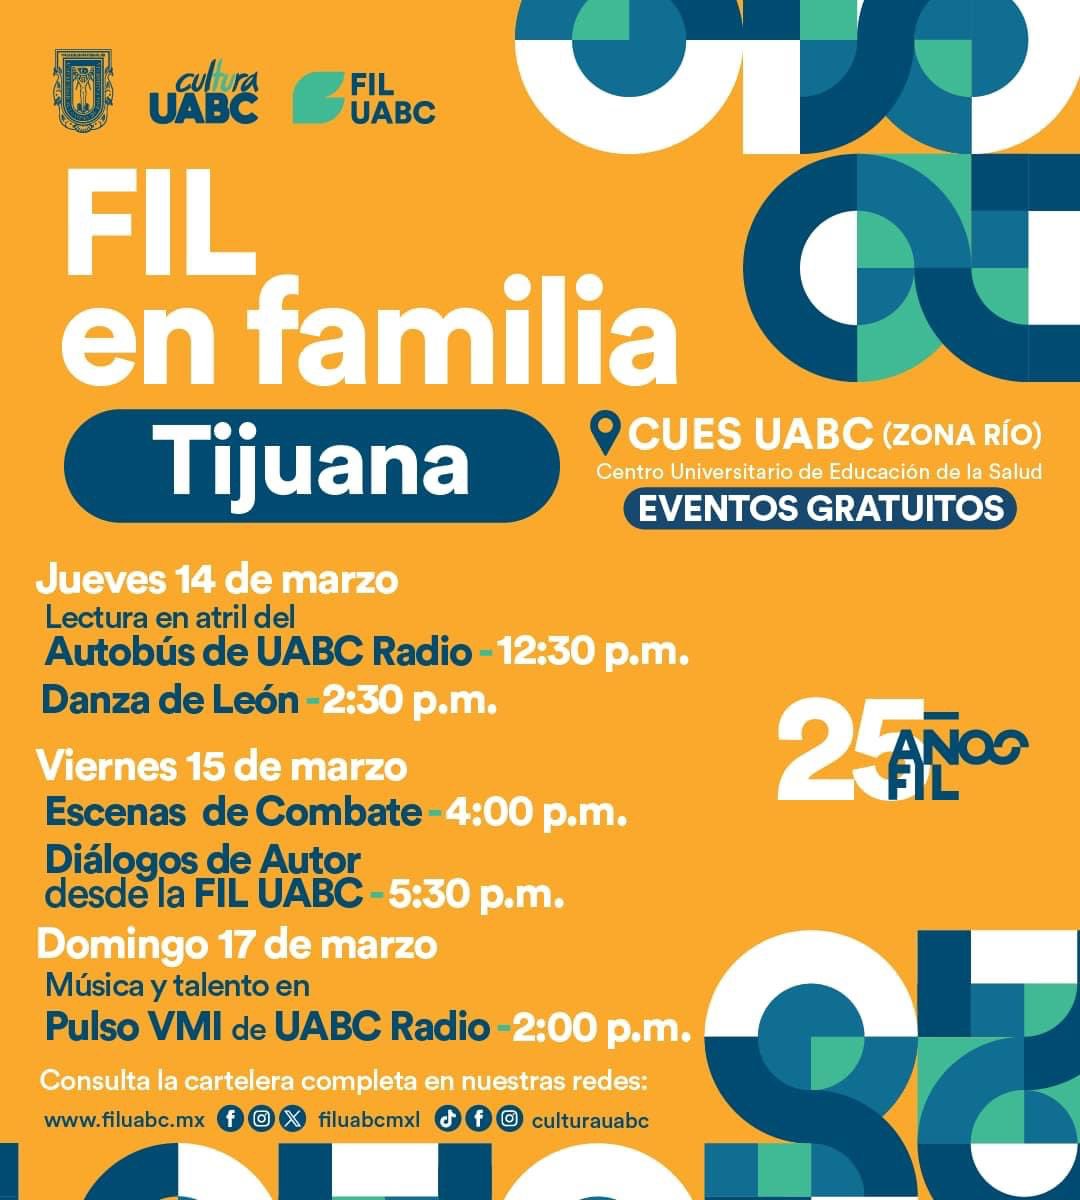 📣 ¡Tijuana! Nos vemos a partir de mañana y hasta el 17 de marzo en el Centro Universitario de Educación de la Salud (CUES UABC) Zona Río de 10:00 a.m. a 8:00 p.m. Encuentra el programa completo de tu ciudad aquí 👉​filuabc.mx/sedes